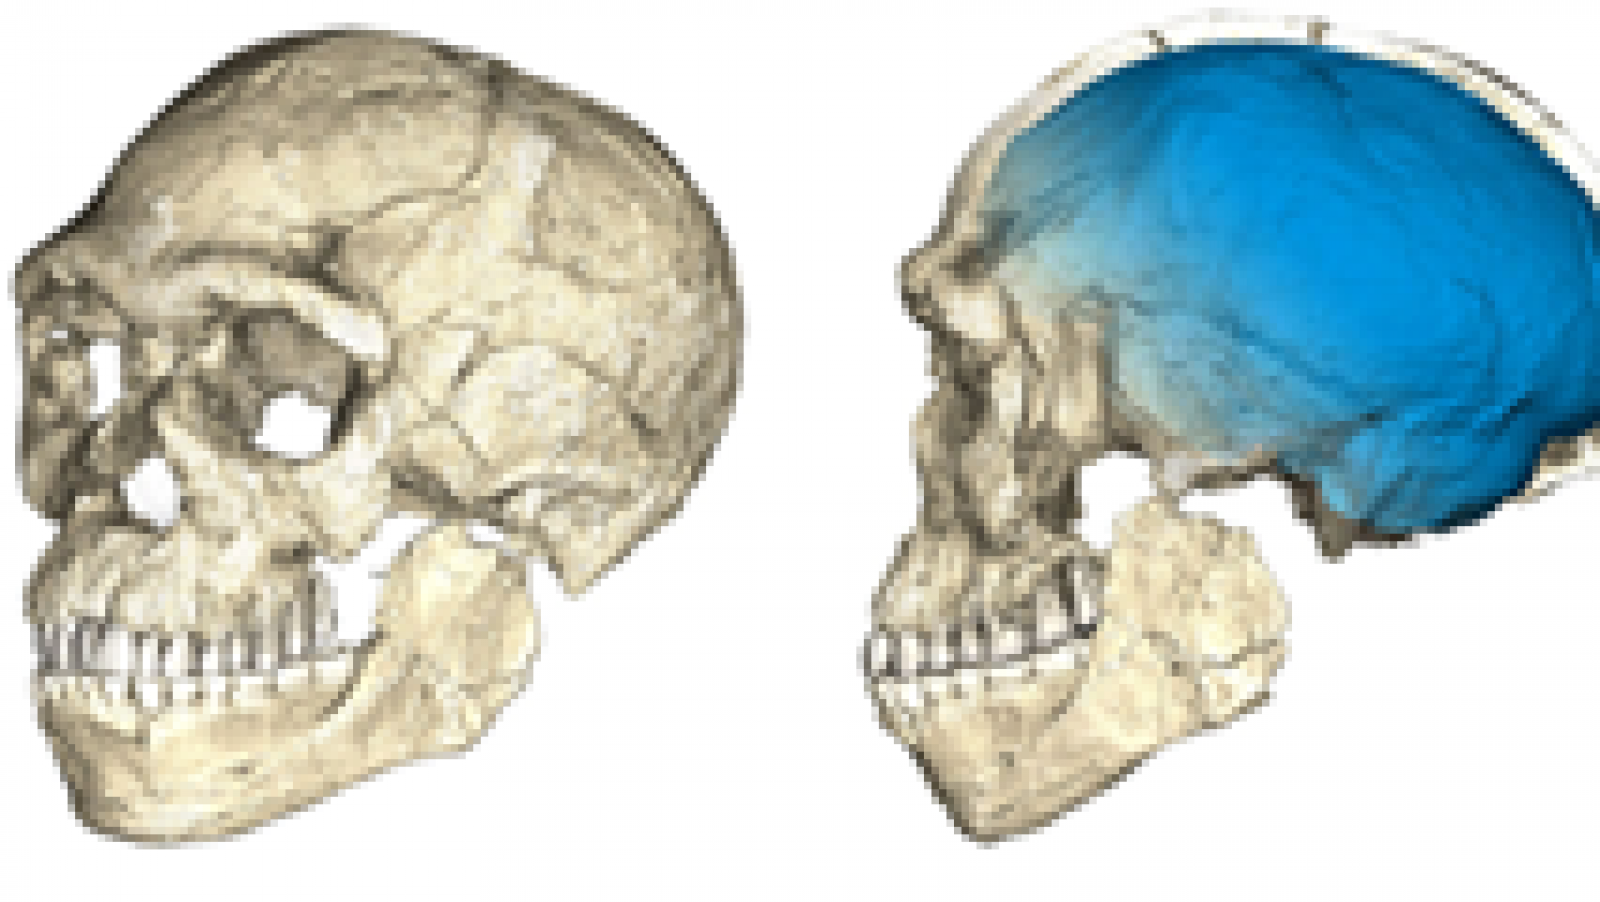 Los restos más antiguos conocidos de Homo Sapiens han sido hallados en un lugar de Marruecos llamado Yebel Irhoud, unos 150 kilómetros al oeste de Marrakech, según un estudio publicado en la revista especializada Nature. Este descubrimiento cambiaría